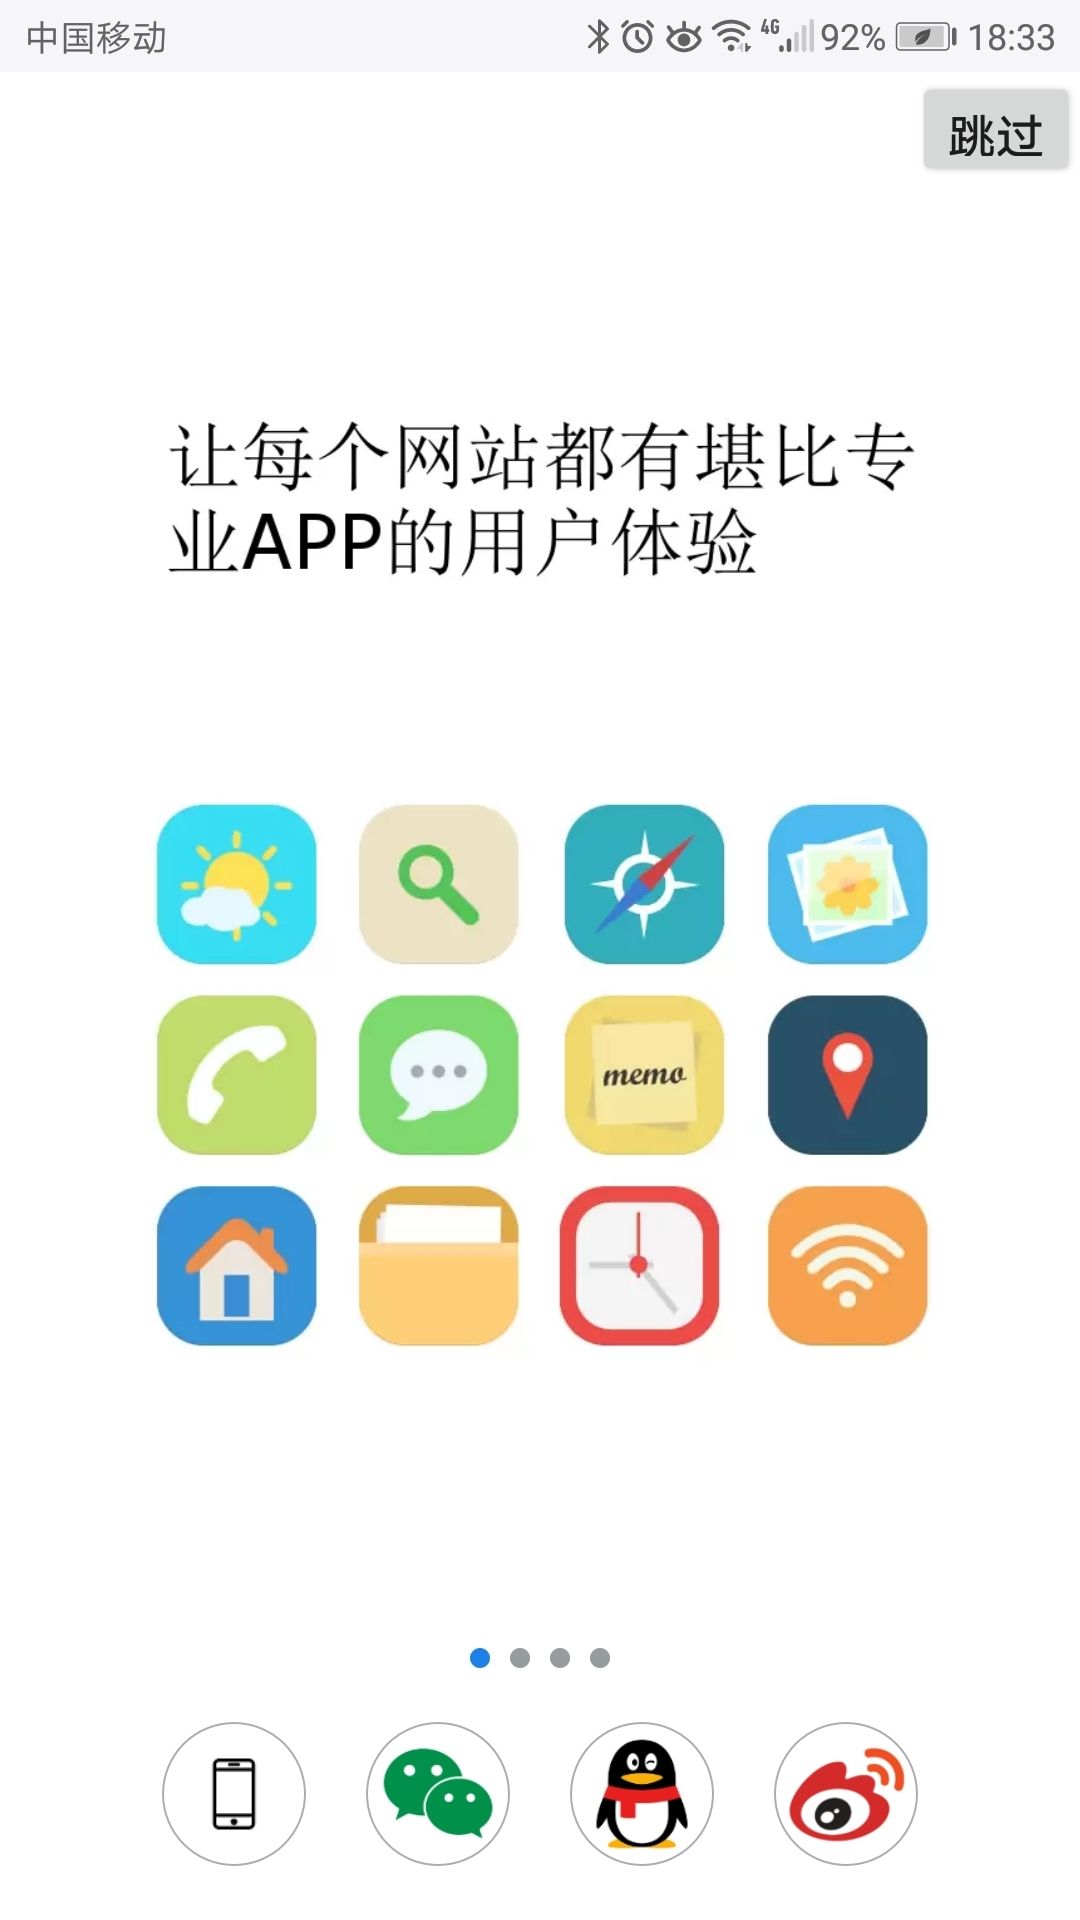 腾讯应用宝app下载ios苹果版下载安装2019 v8.2.8